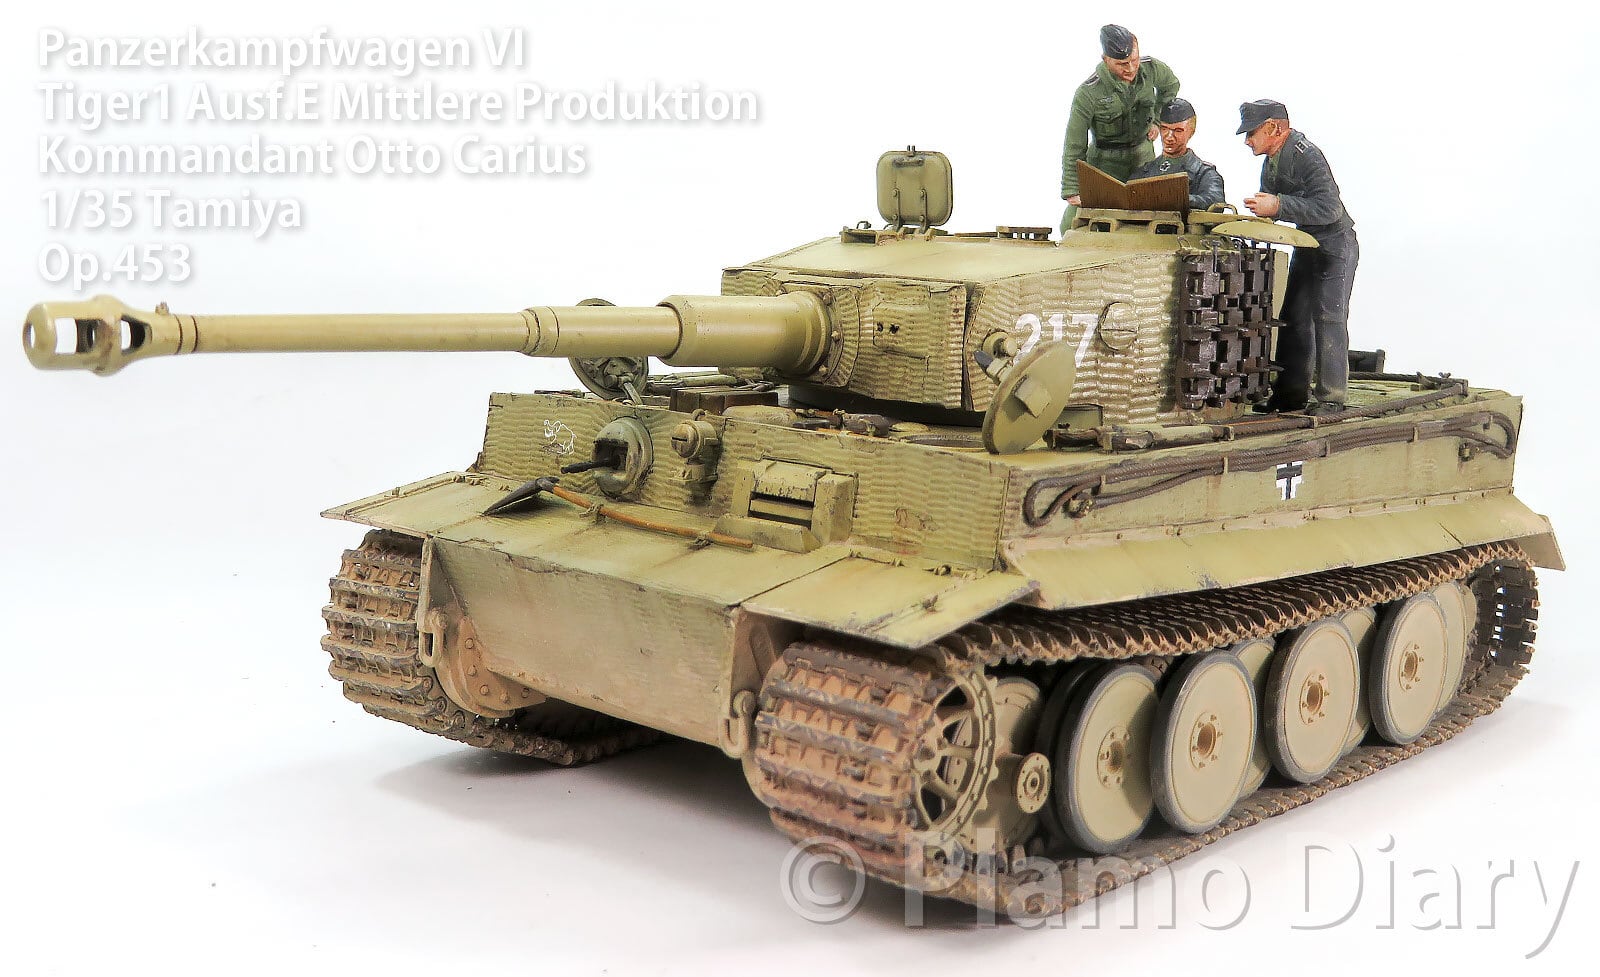 ドイツ重戦車タイガー1中期生産型 オットーカリウス搭乗車 1/35